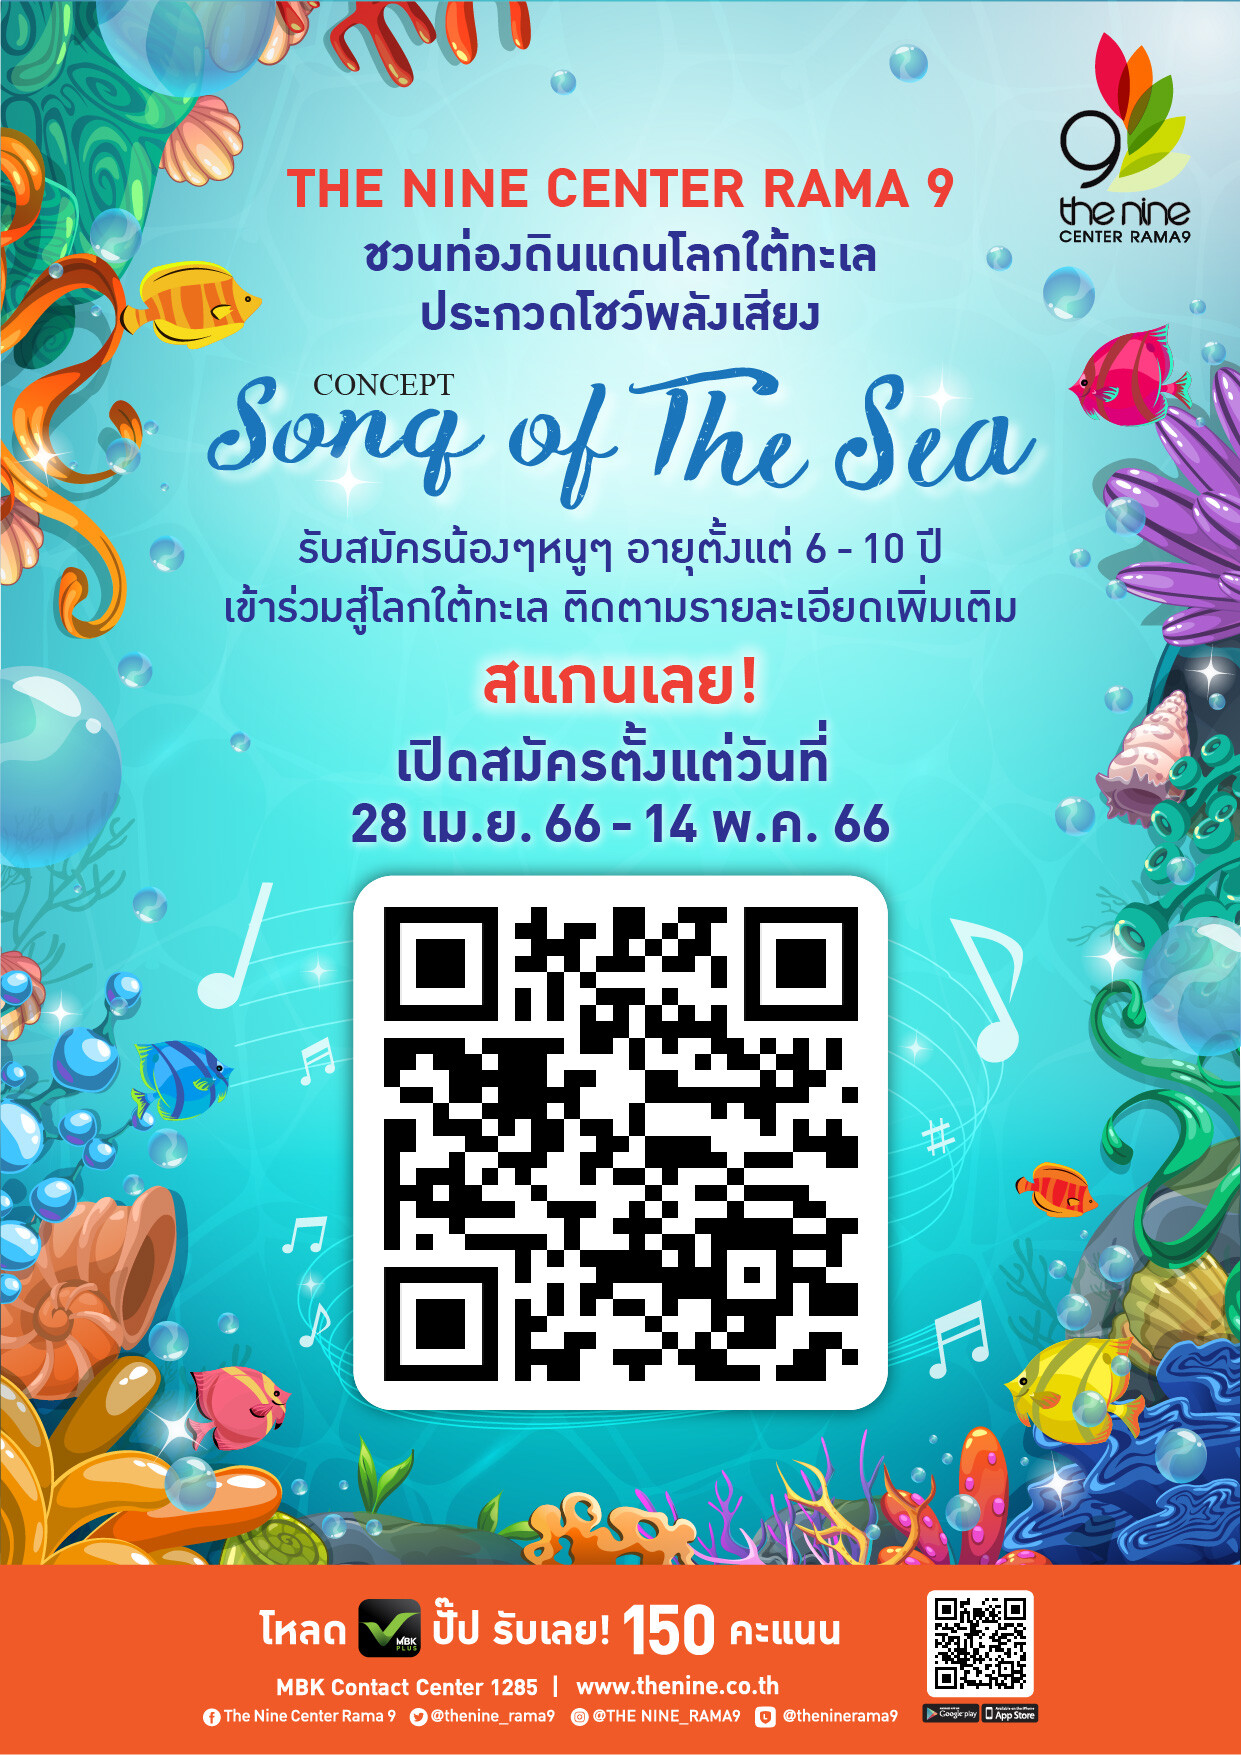 เดอะไนน์ เซ็นเตอร์ พระราม 9 ชวนนักร้องวัยจิ๋ว ร่วมประชันเสียงเพลงในโลกใต้ทะเล ในงาน "Song of The Sea"